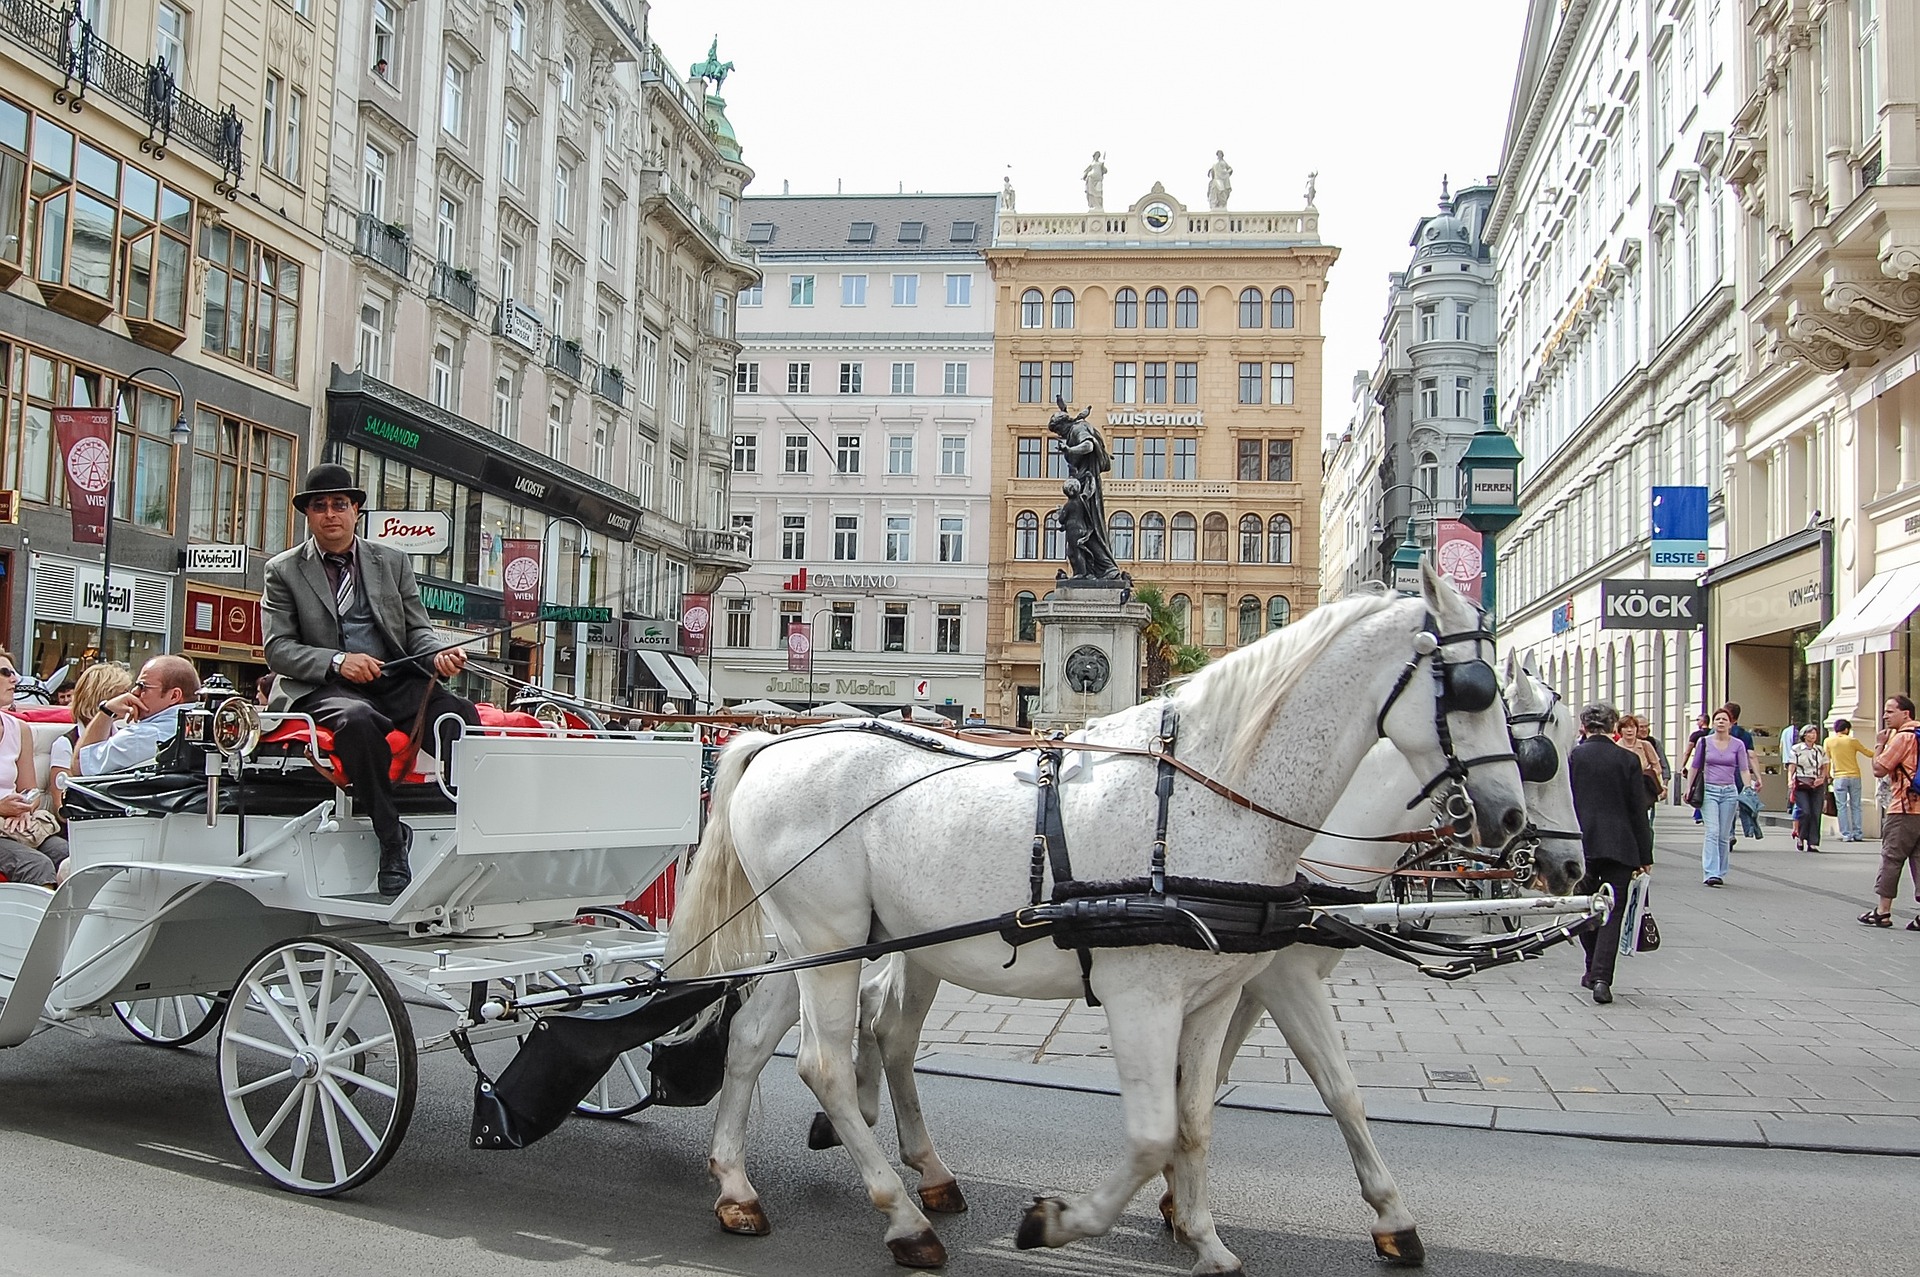 Септемврийски празници в Будапеща, Братислава, Прага и Виена - Изображение 19